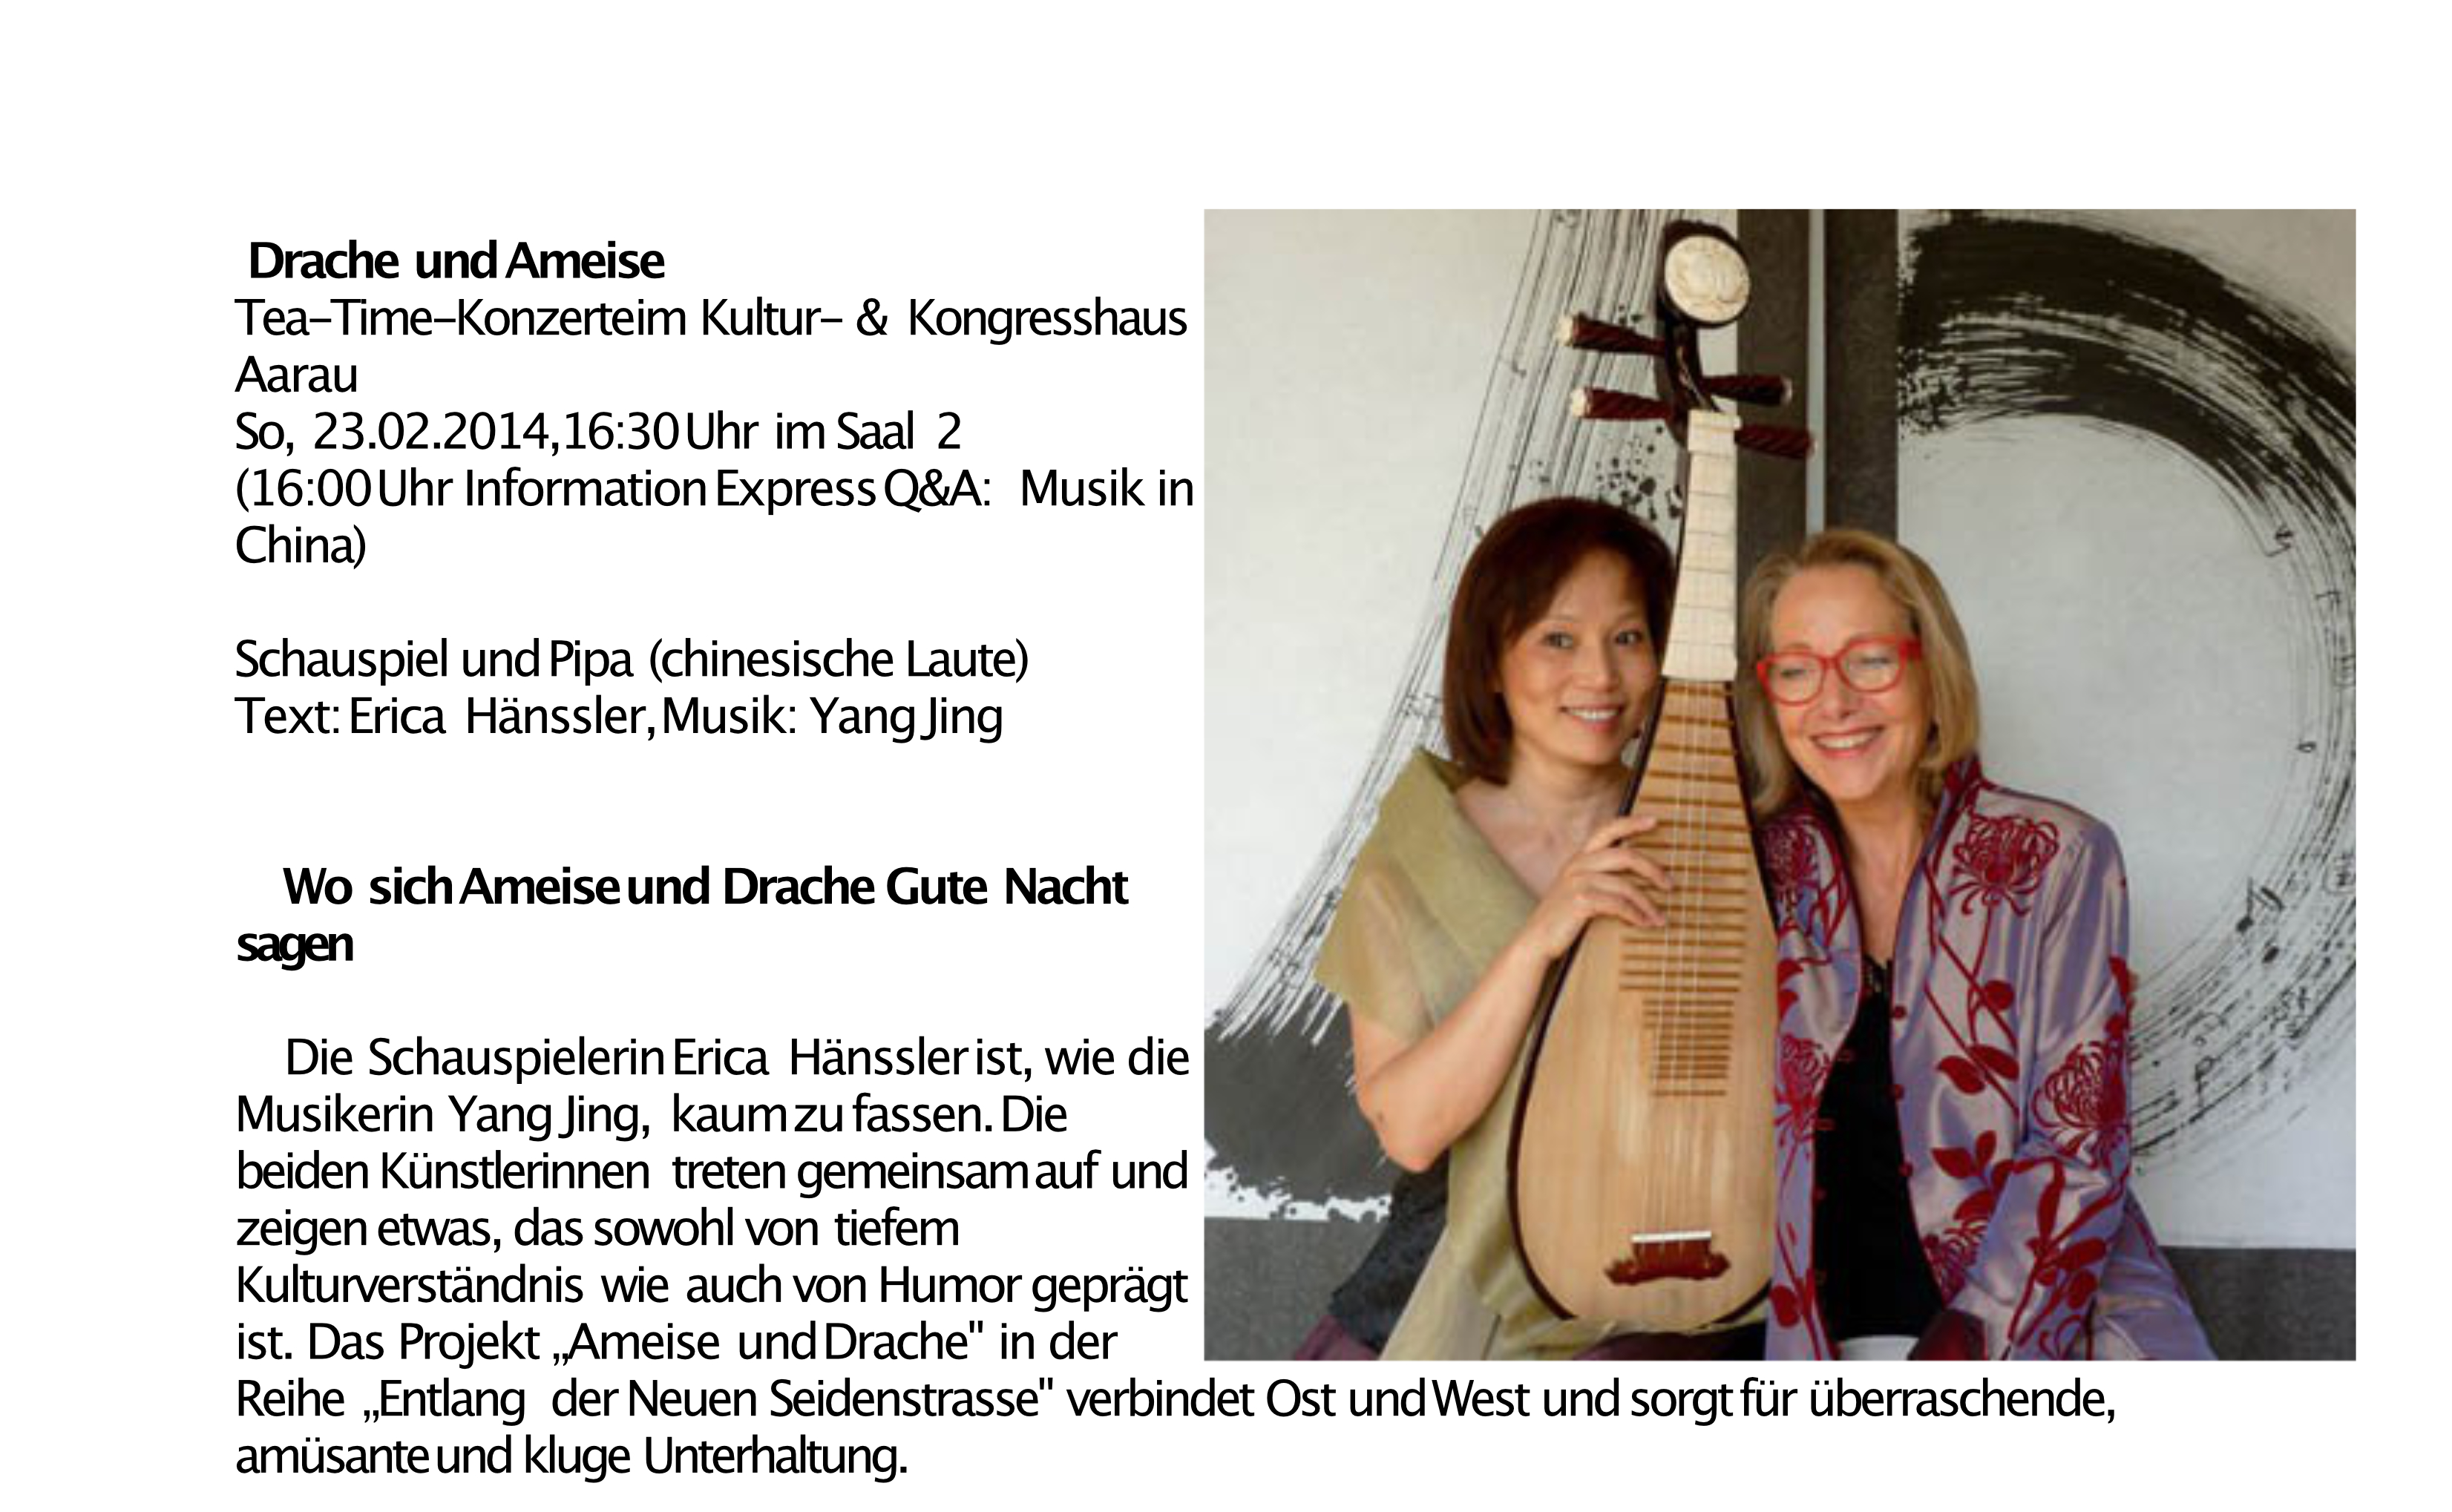 Drache und Ameise - Jing YANG & Erica Hänssler 2013 Kuk Aarau